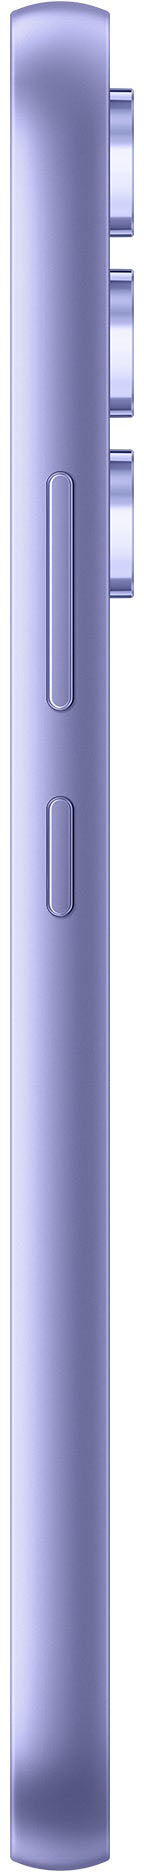 Samsung - Galaxy A54 5G 128GB (Unlocked) - Awesome Violet_2